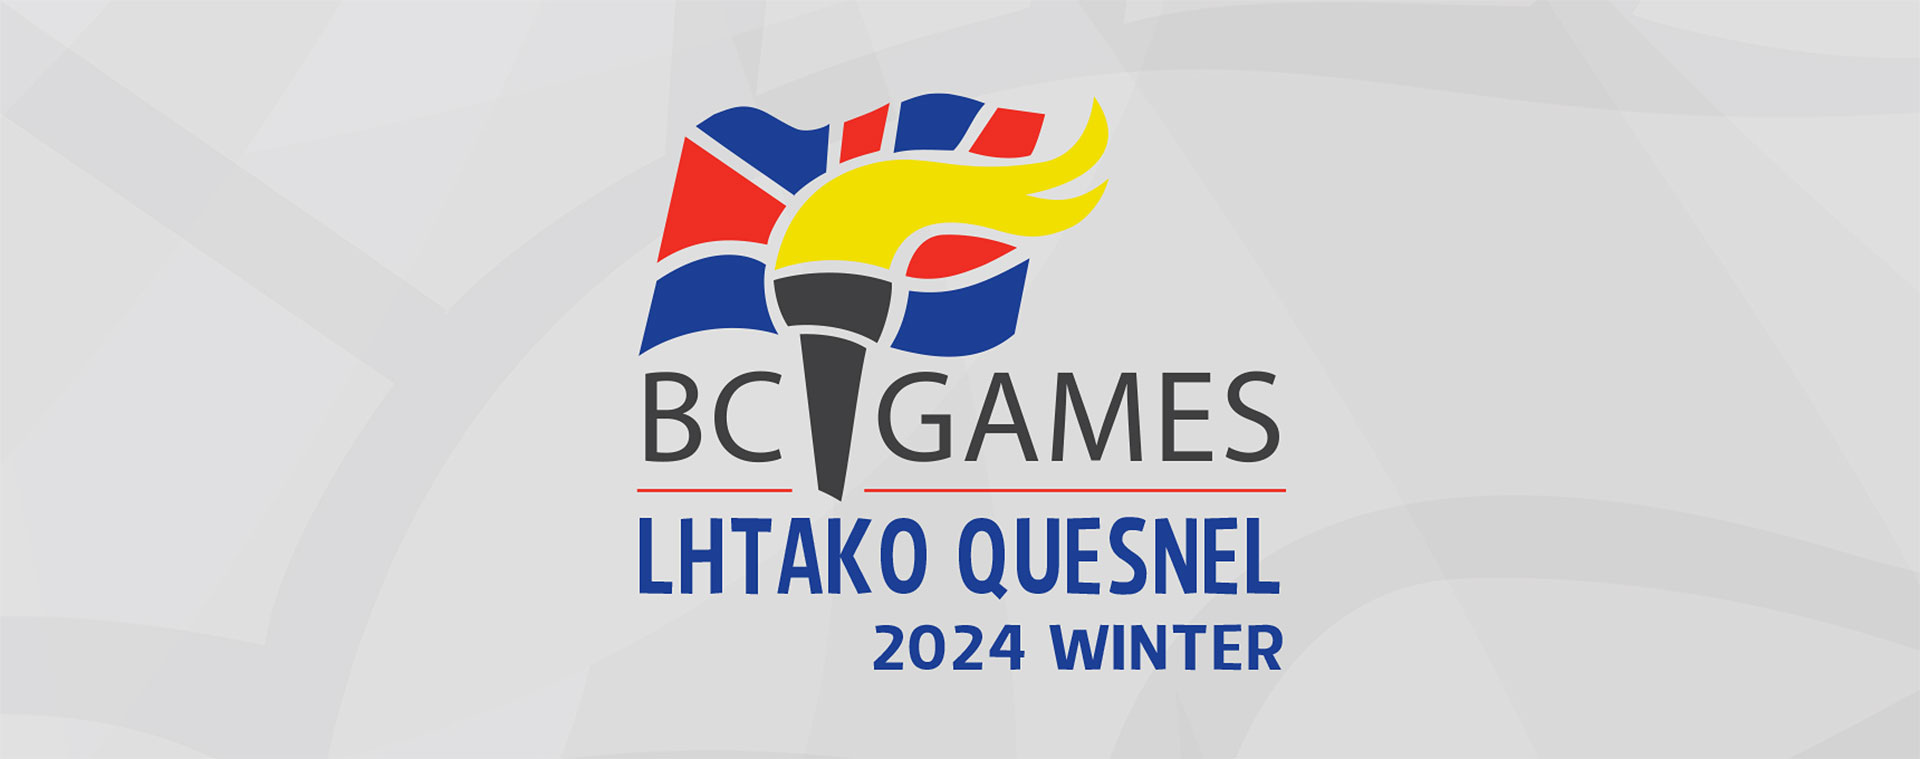 2024 BC Winter Games Lhtako Quesnel